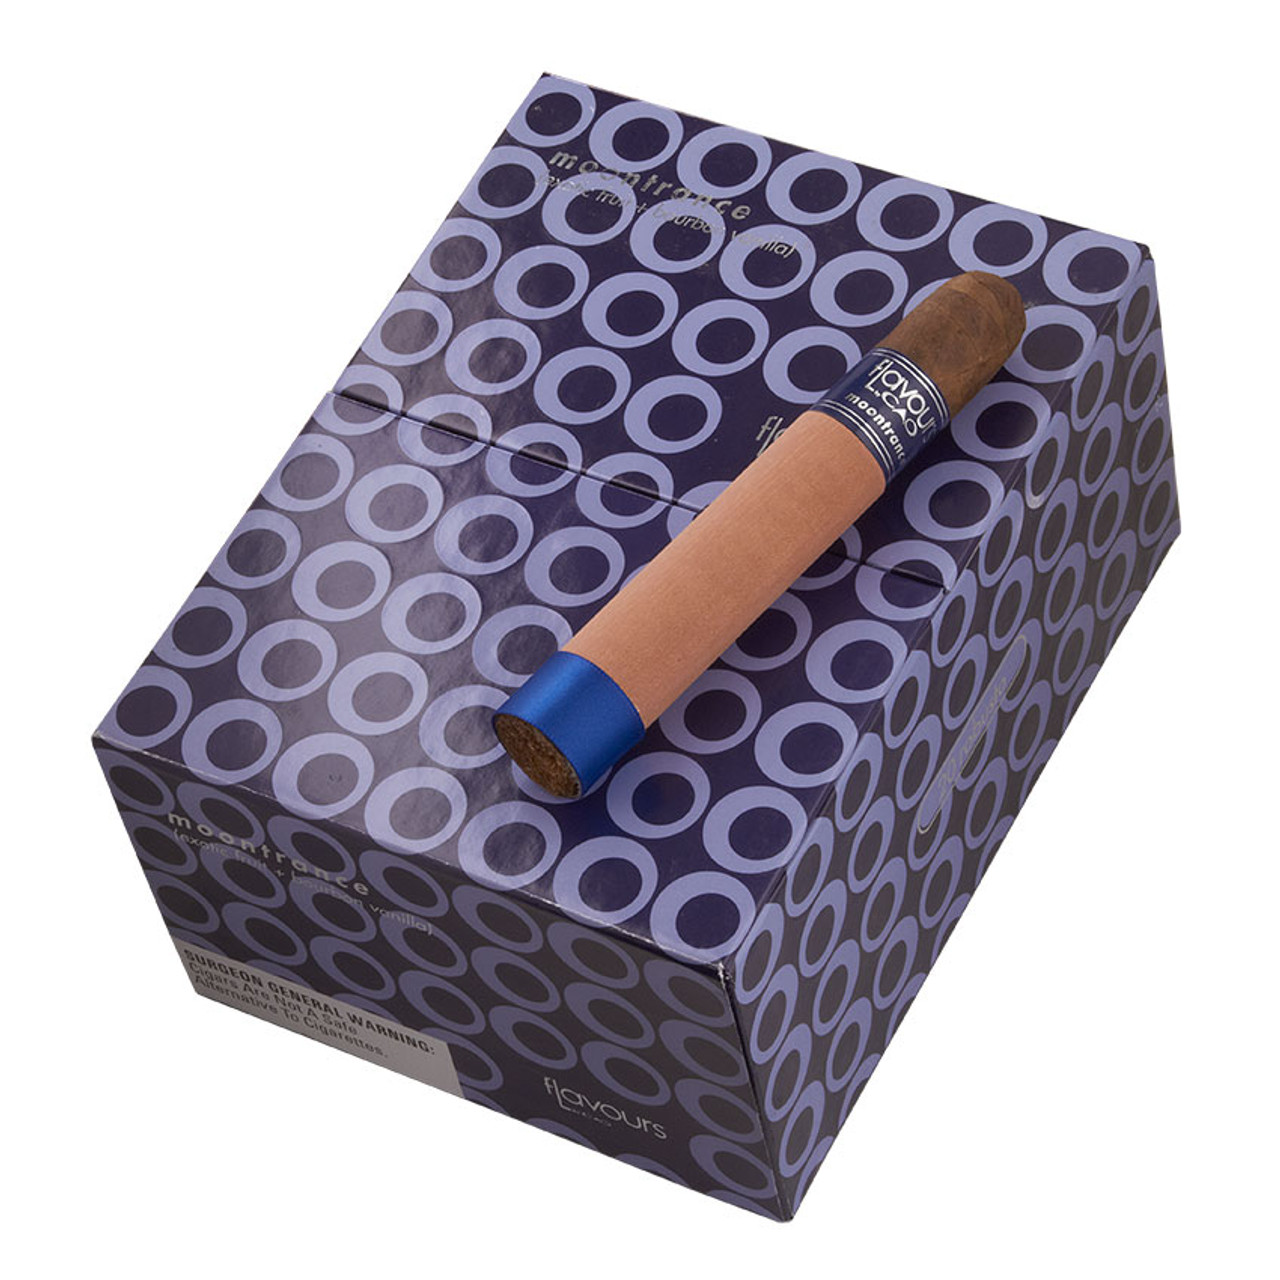 CAO Moontrance Robusto Cigars - 5 x 48 (Box of 20) *Box